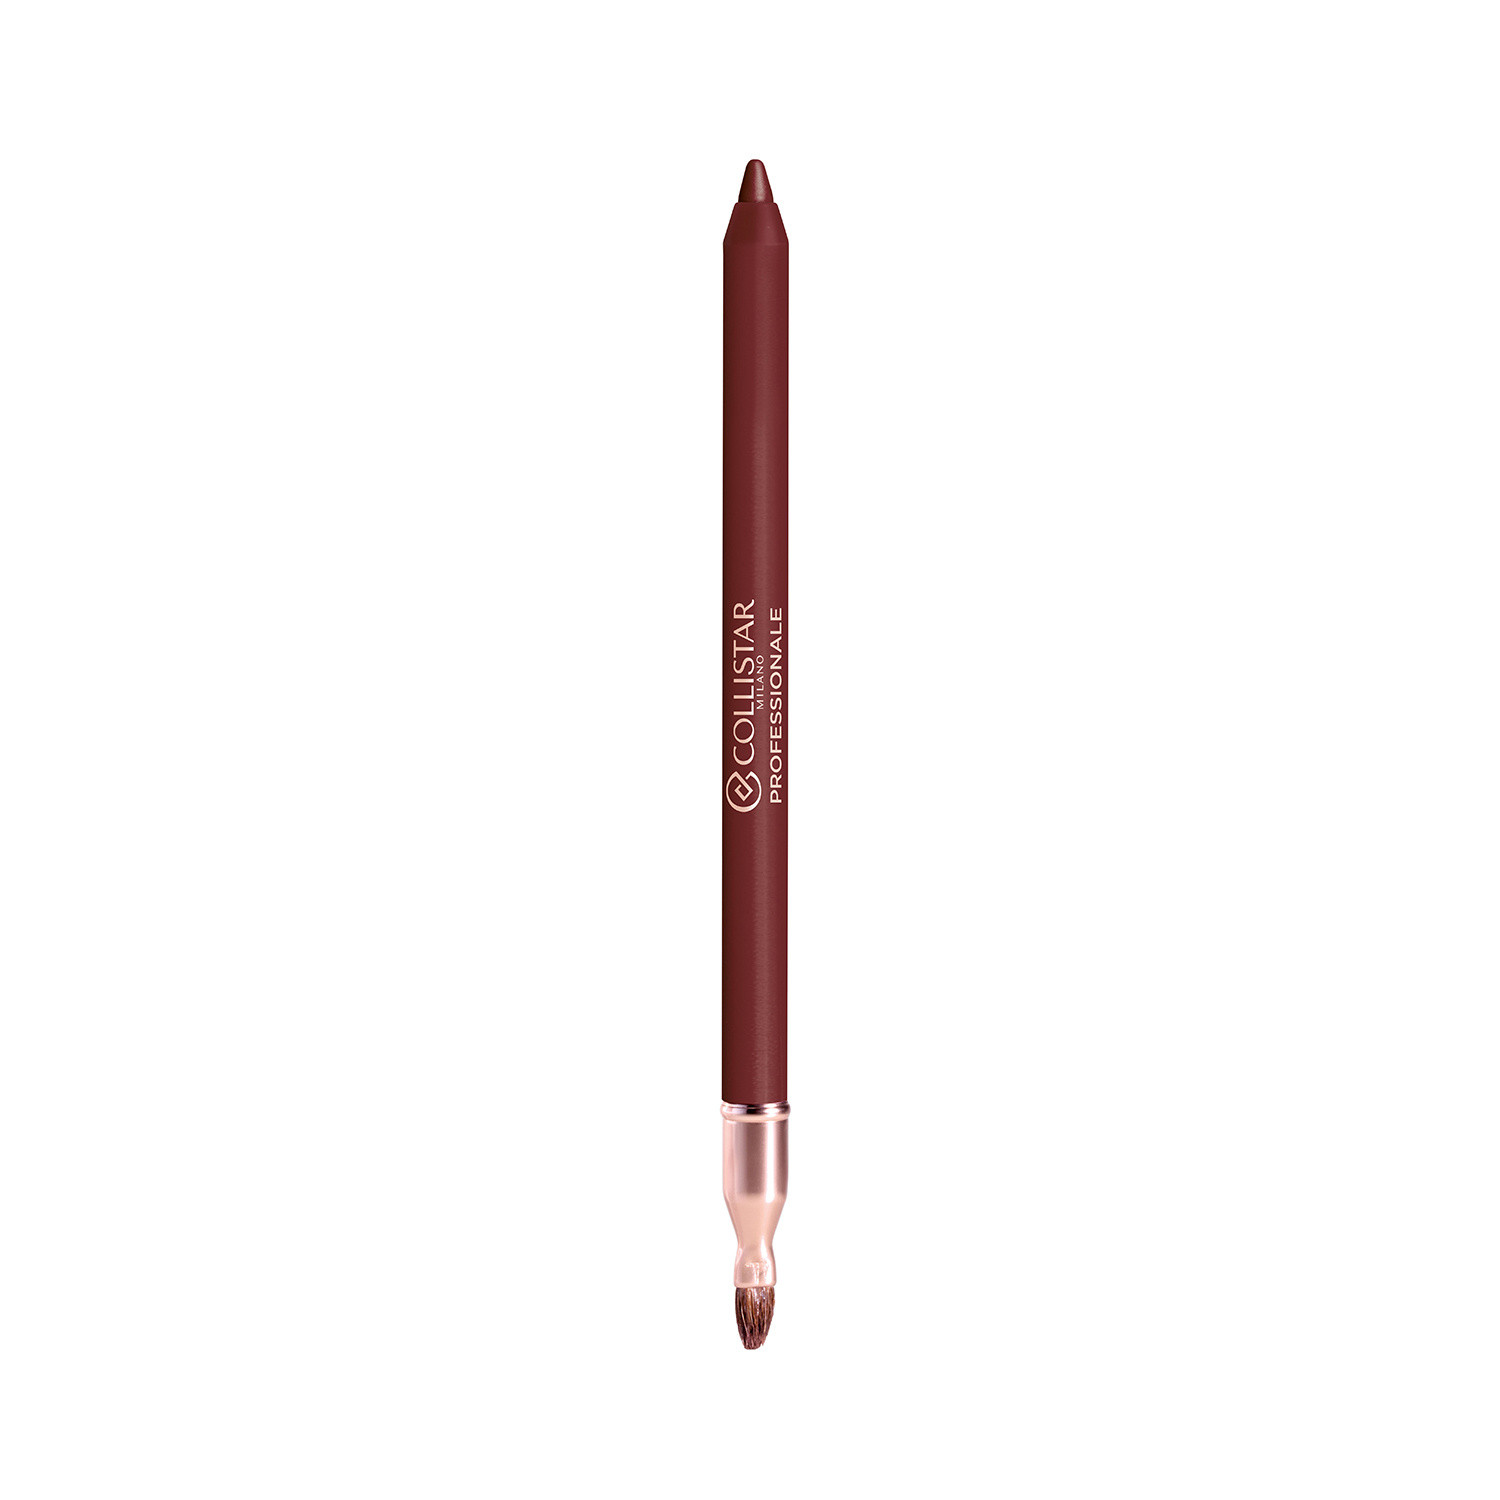 Collistar - Professionale matita labbra lunga durata -  14 Bordeaux, Rosso bordeaux, large image number 1